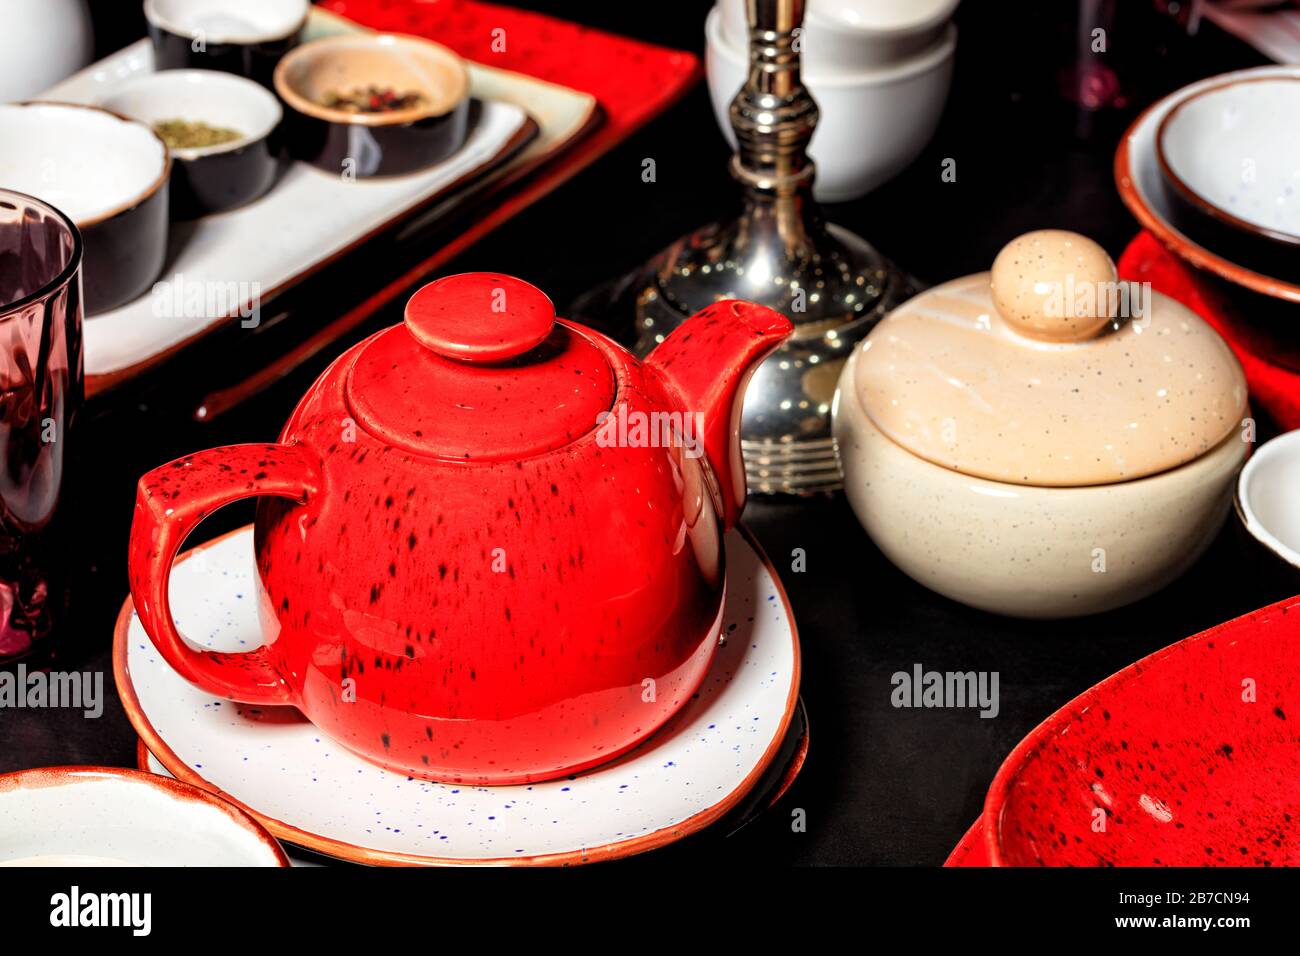 Glänzende Teekanne aus rotem Porzellan mit schwarzen Punkten auf einem schwarzen Tisch, unter anderem mit Teeutensilien, Tellern und handgefertigten Behältern. Selektiver Fokus. Stockfoto